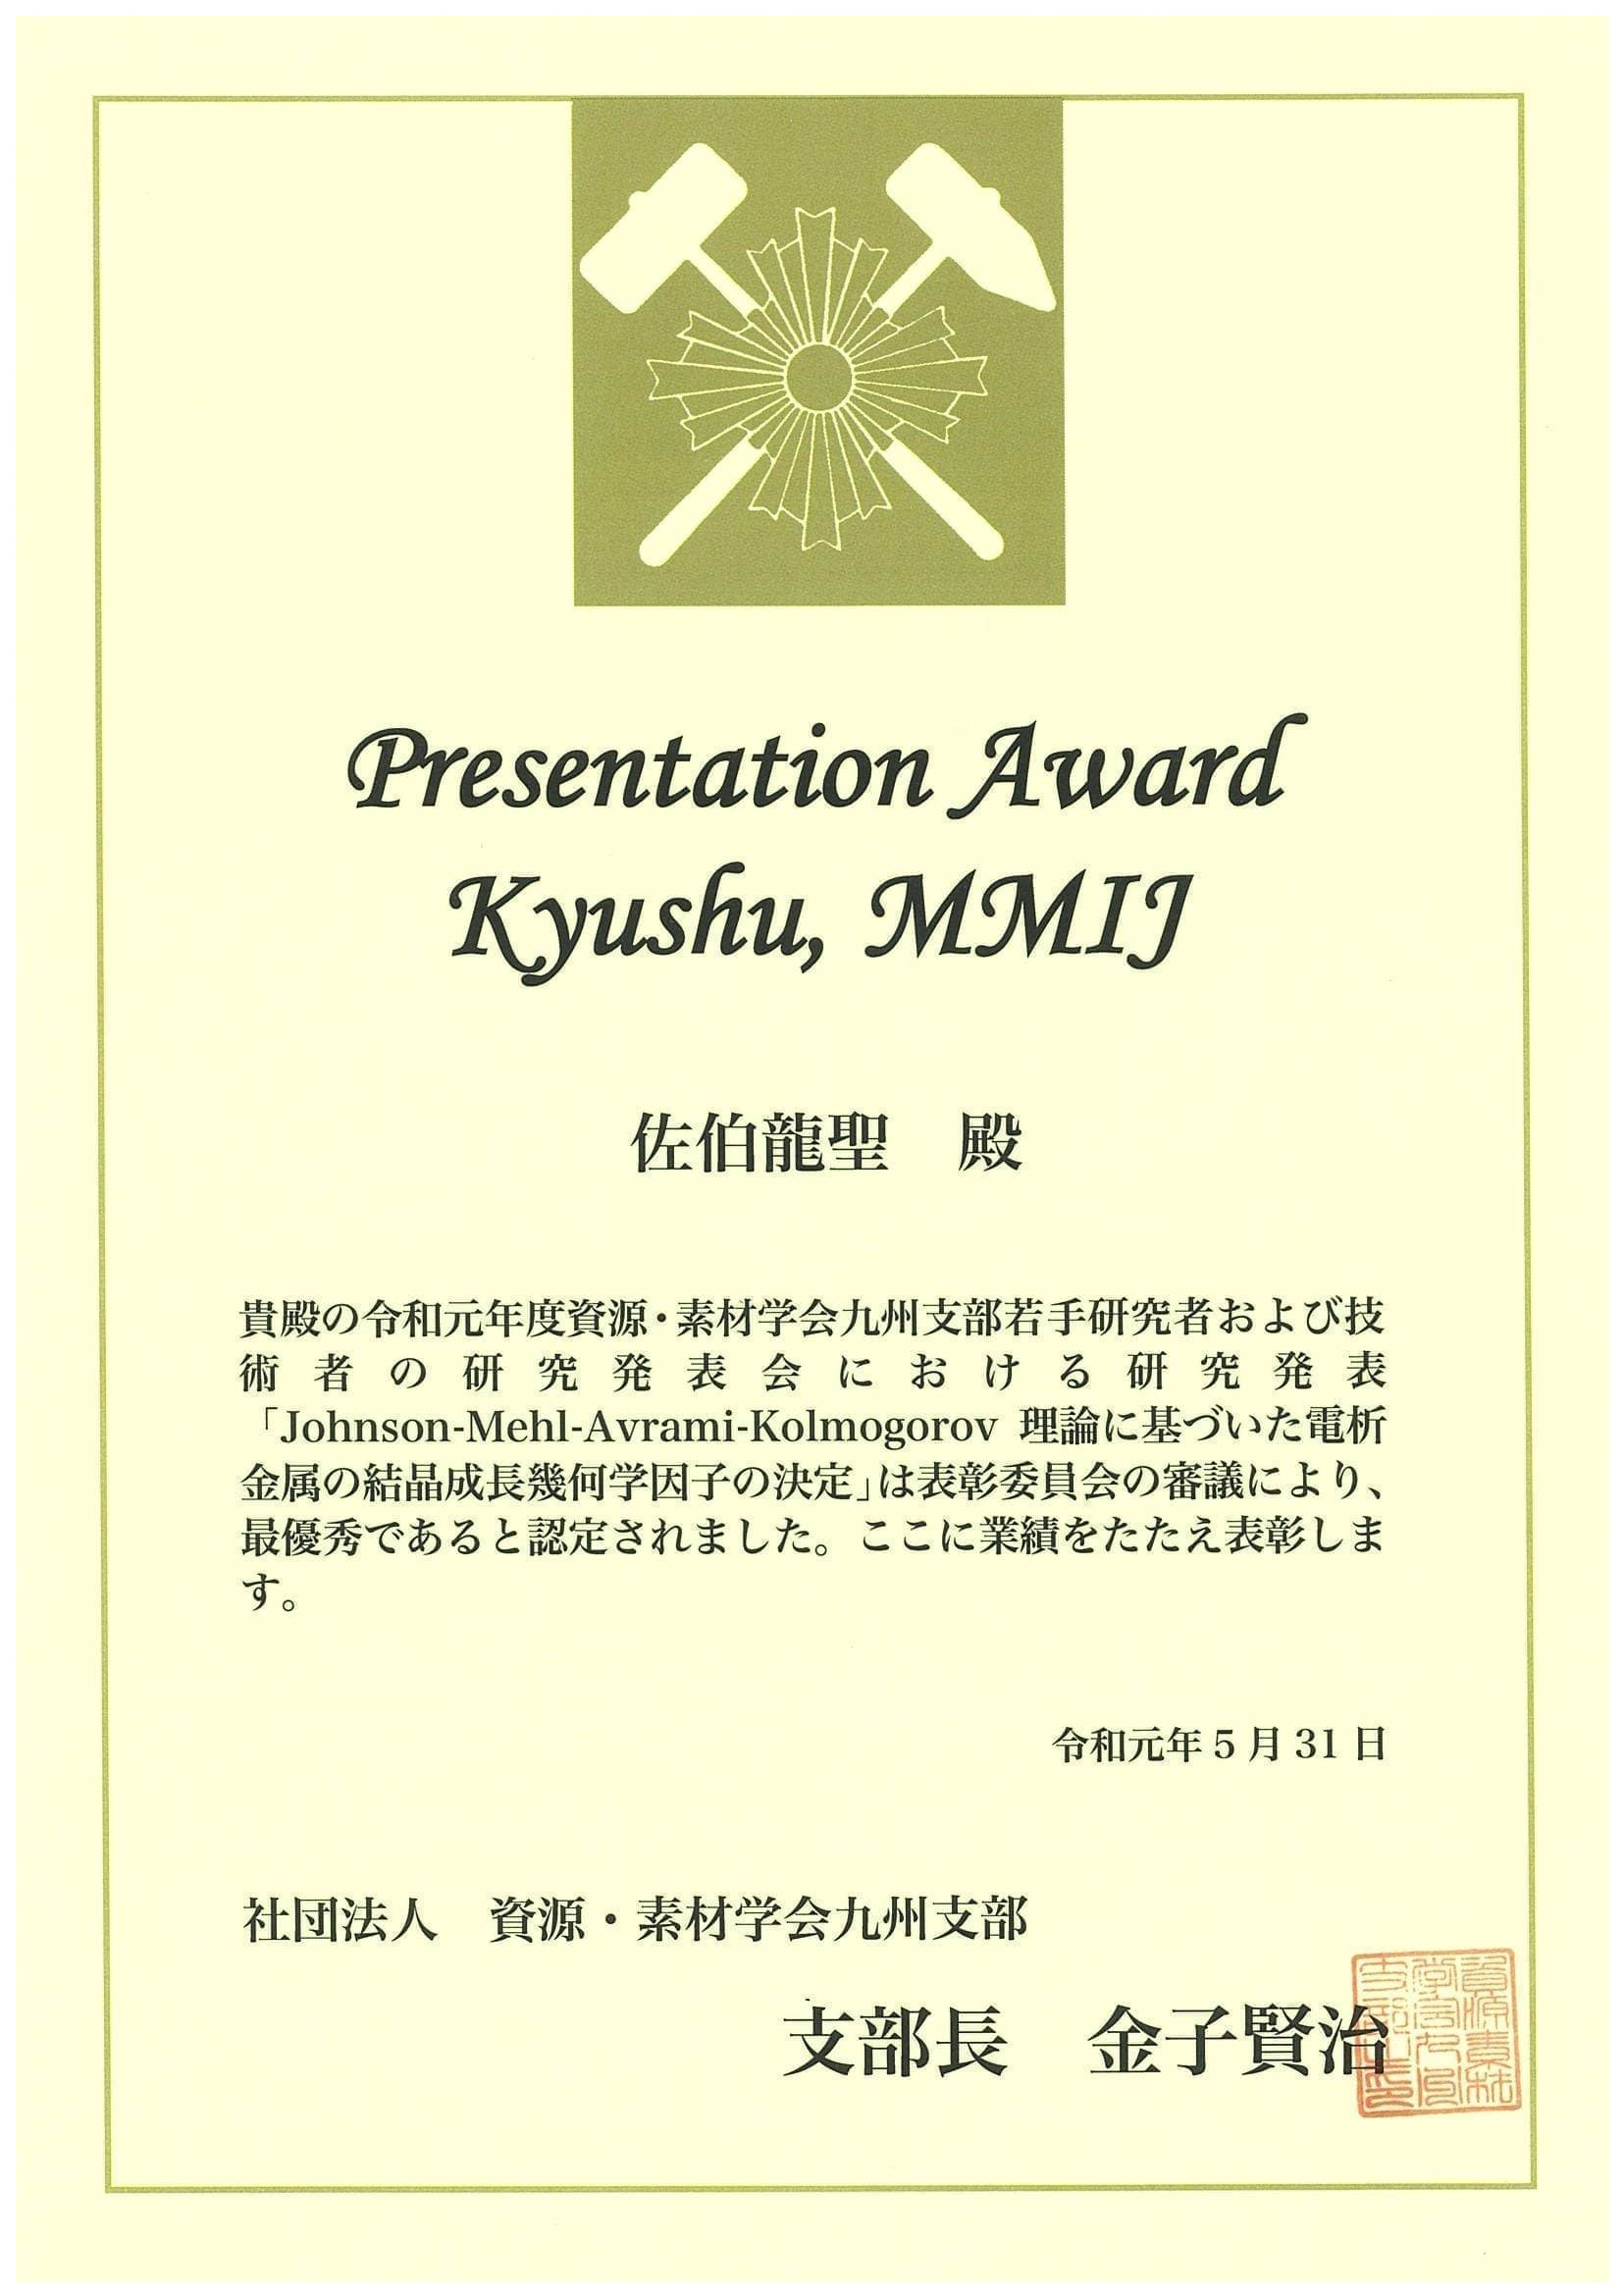 佐伯龍聖君(M2)が、資源・素材学会九州支部若手研究者および技術者の研究発表会において、Presentation Award Kyushu, MMIJを受賞しました。2019/05/31